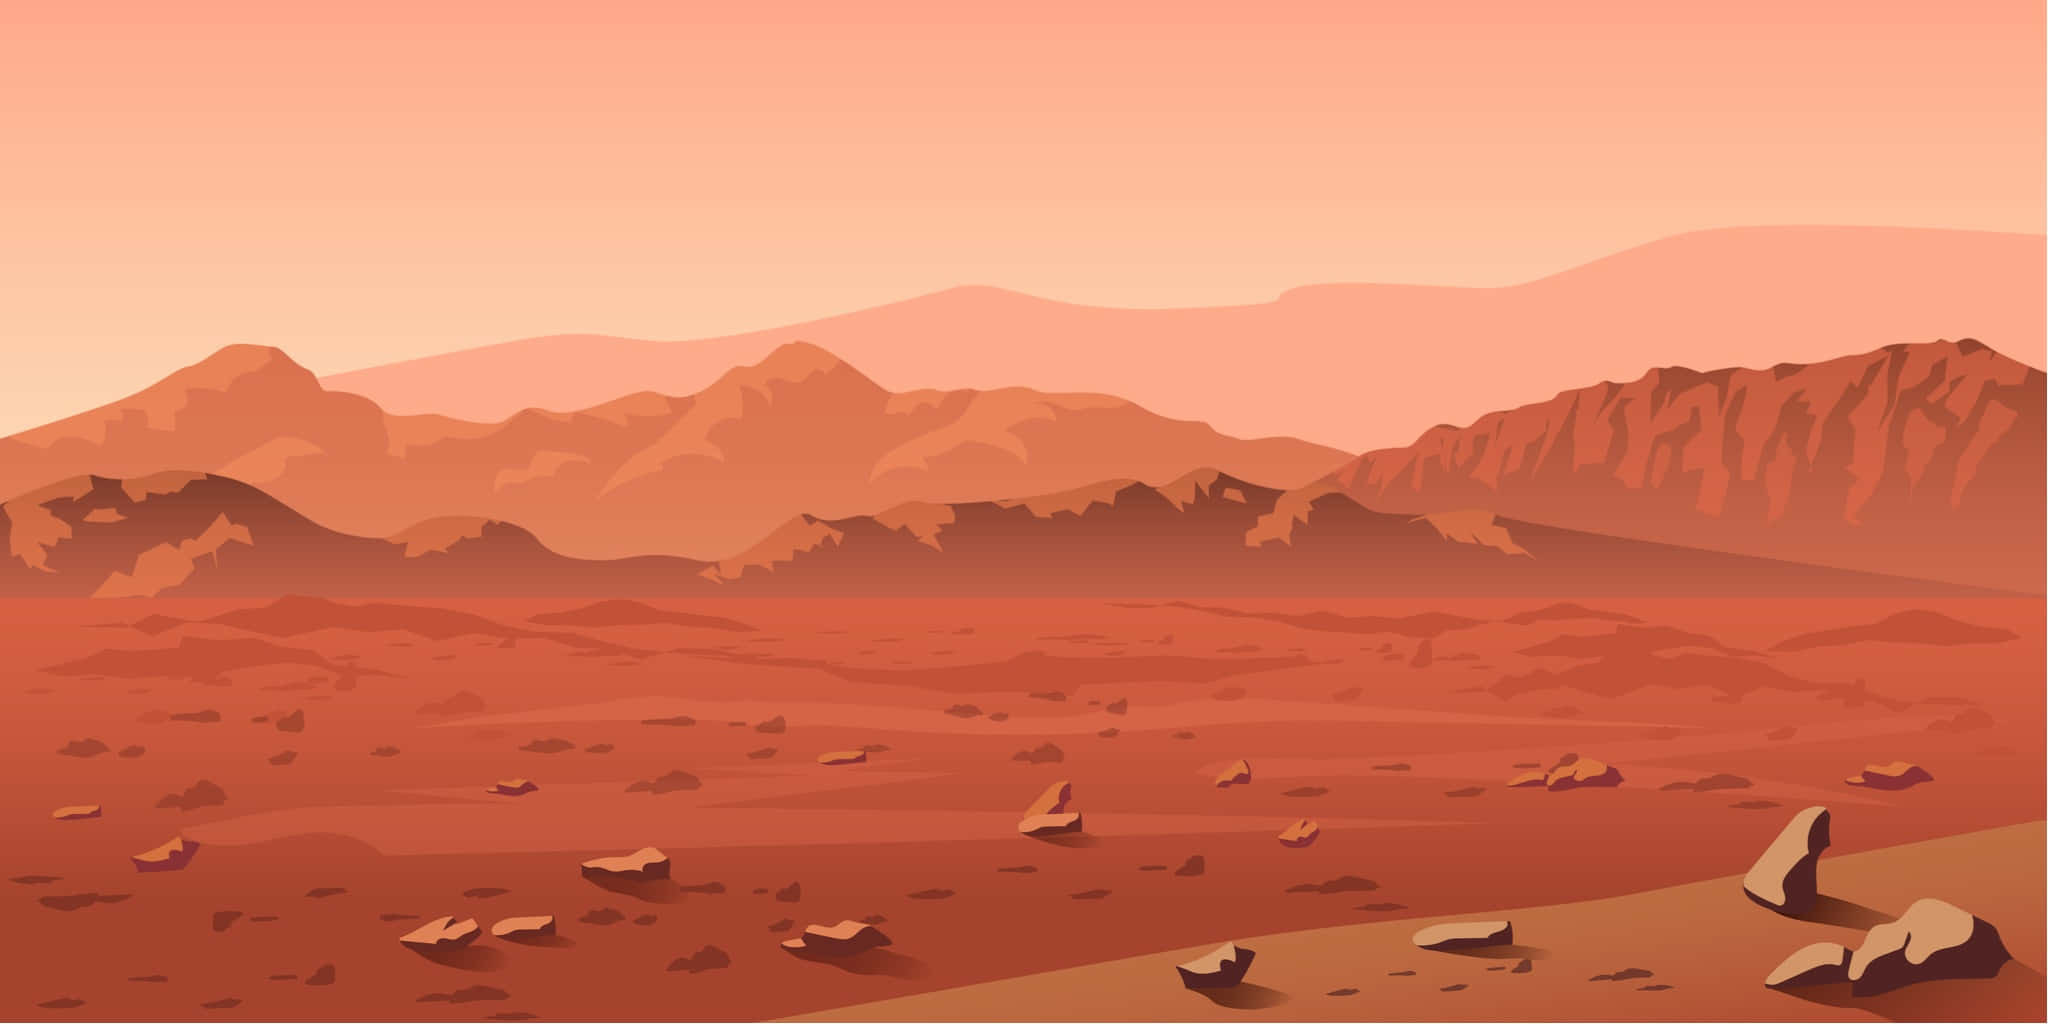 Willkommenauf Dem Roten Planeten - Mars.